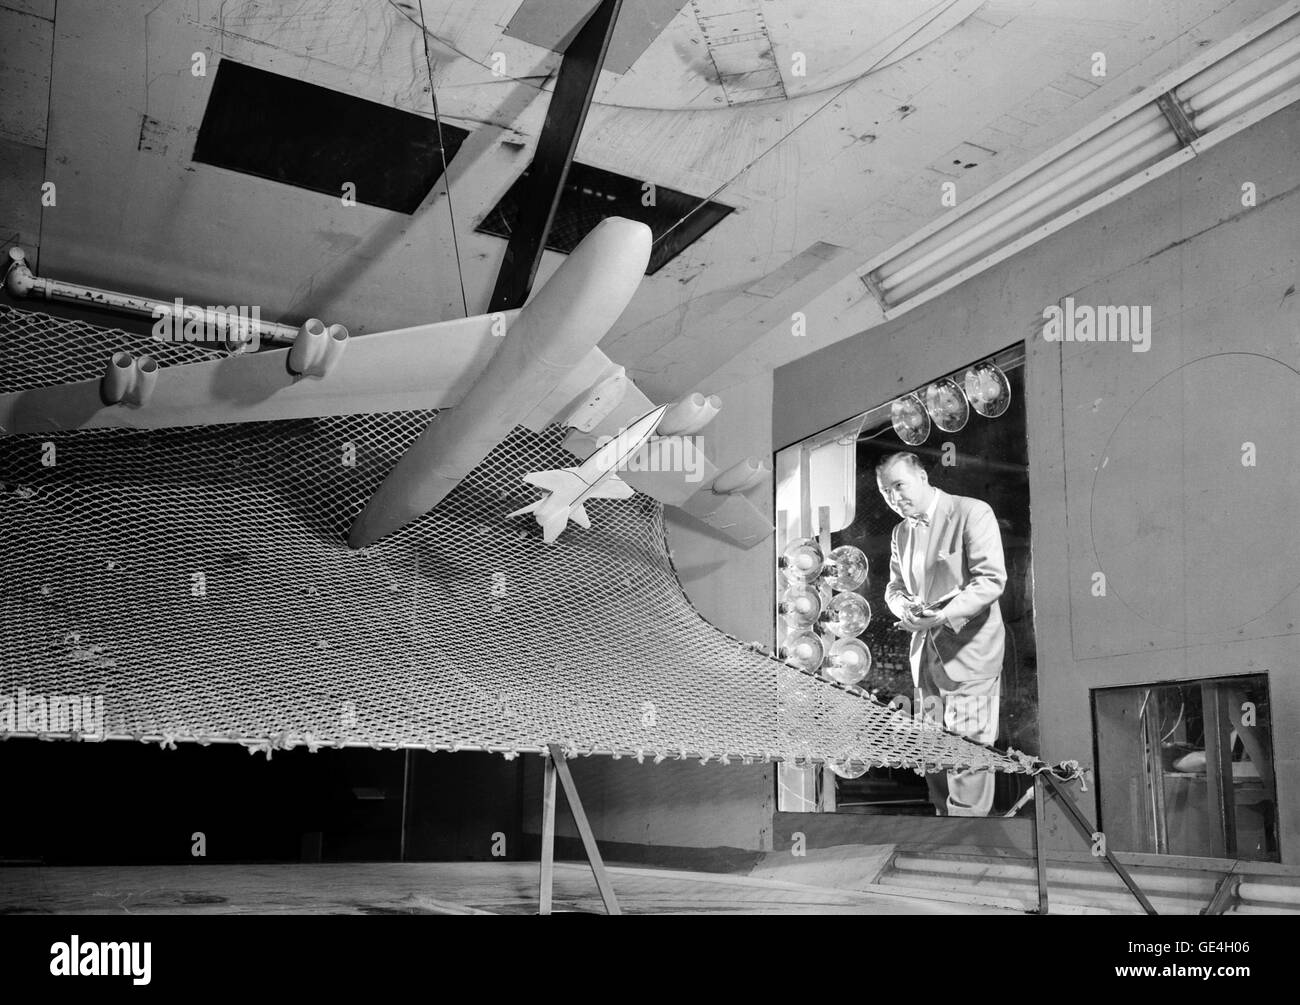 Ein Modell ein Zwanzigstel des x-15, die ursprünglich unter den Flügel von einer b-52 ausgesetzt wird von einem Wissenschaftler beobachtet, wie er die Bomber Modell in Tests verläßt, um die Trennwirkung zu bestimmen- and -drop Bewegung des Flugzeuges Forschung. Der Test wurde in Langley High Speed 7 x 10 Fußgängertunnel, um 1957 durchgeführt. Stockfoto